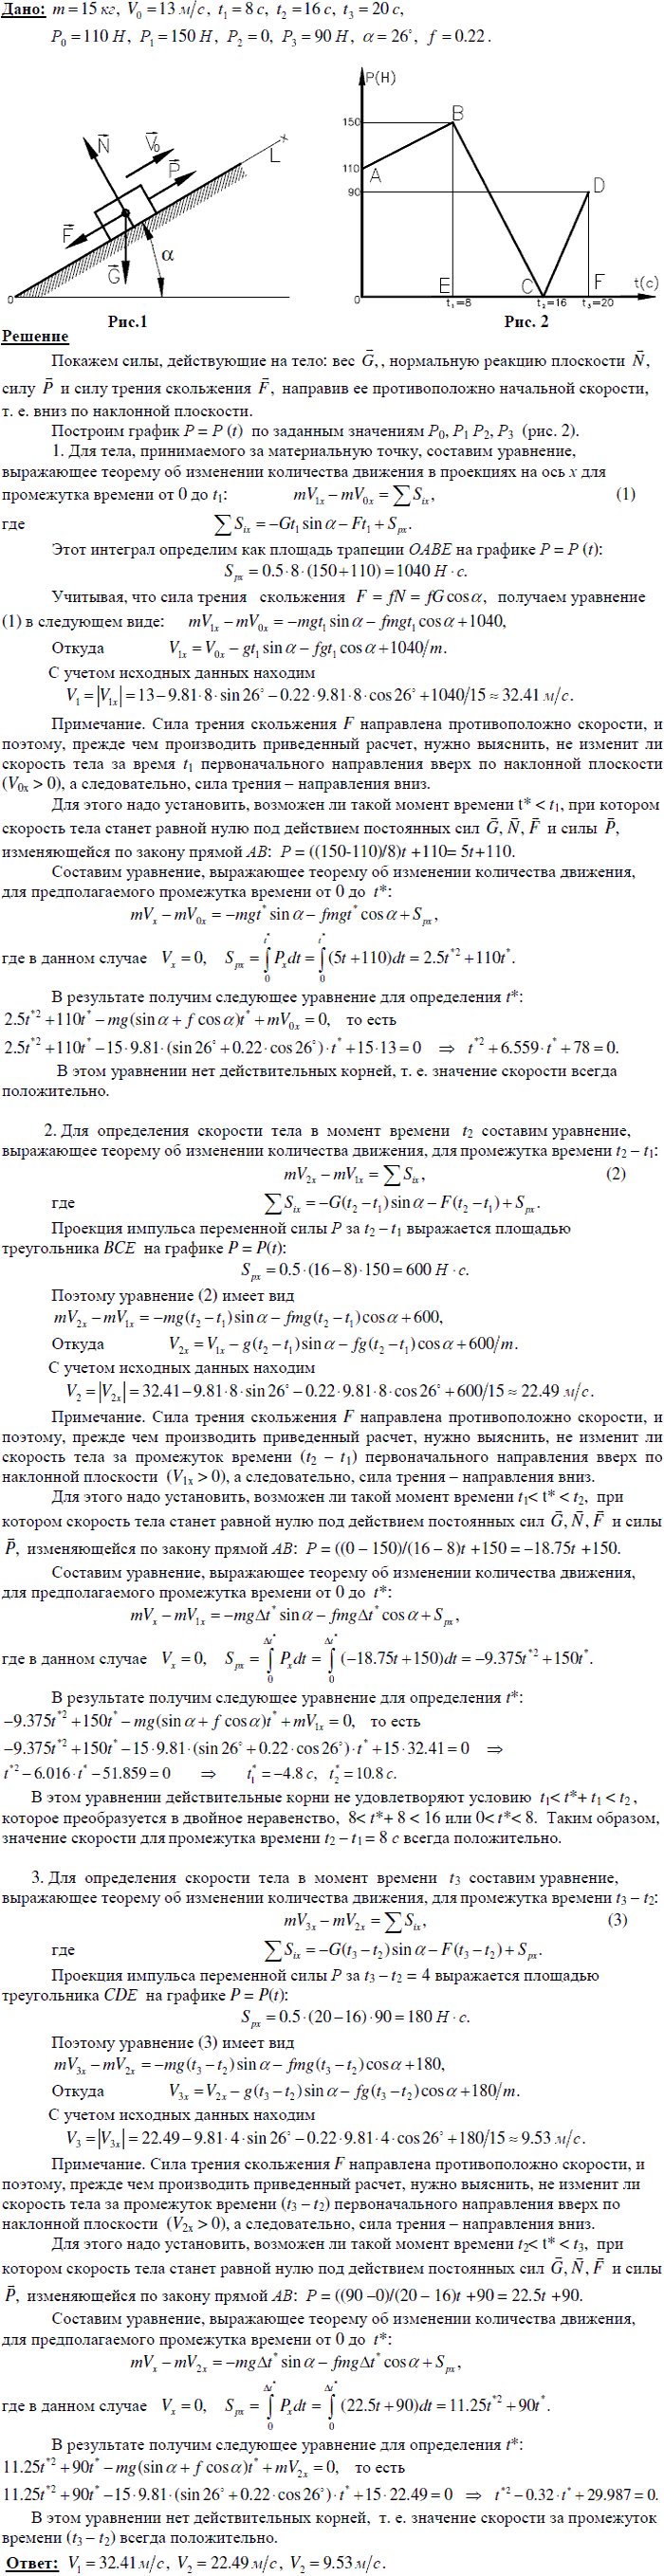 Задание Д.5 вариант 18. m=15 кг; v0=13,0 м/с; t1=8 с; t2=16 с; t3=20 с; P0=110 Н; P1=150 Н; P2=0 Н; P3=90 Н; α=26 град; f=0,22